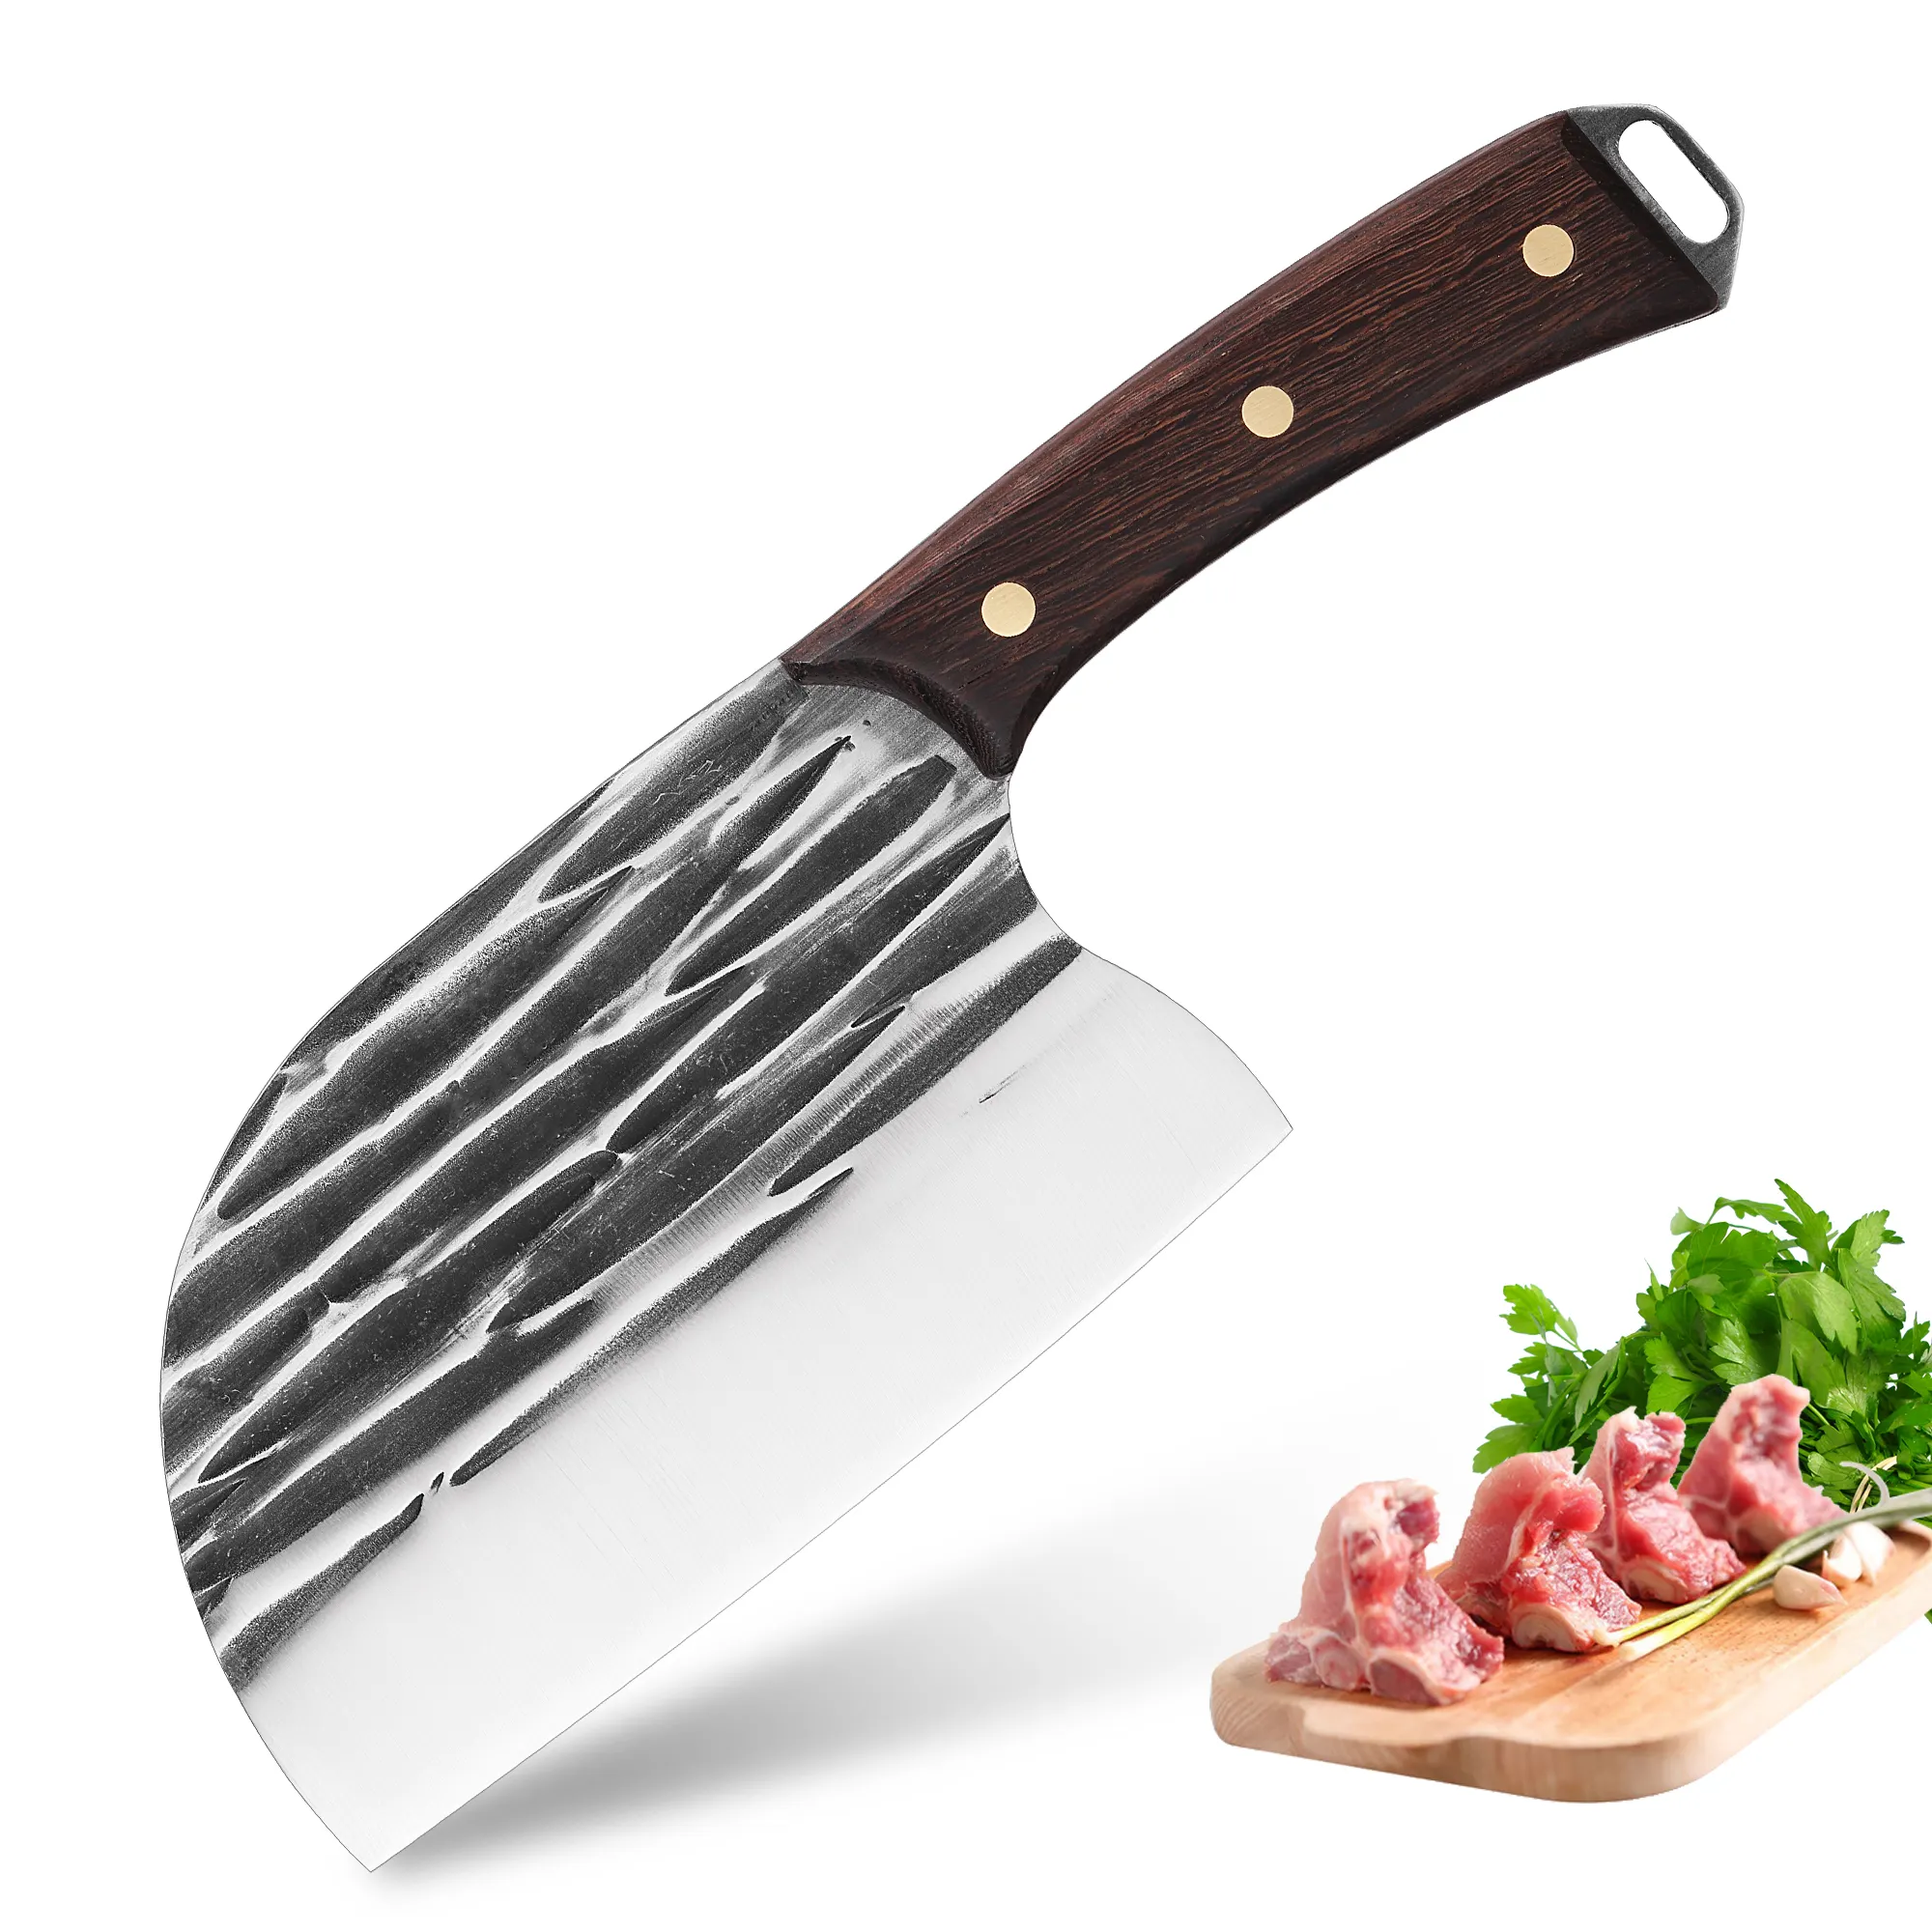 المهنية الشيف سكاكين المطبخ أداة كامل تانغ مقبض 5cr15mov الفولاذ المقاوم للصدأ الانفطار اللحوم سكين الطاهي مزورة